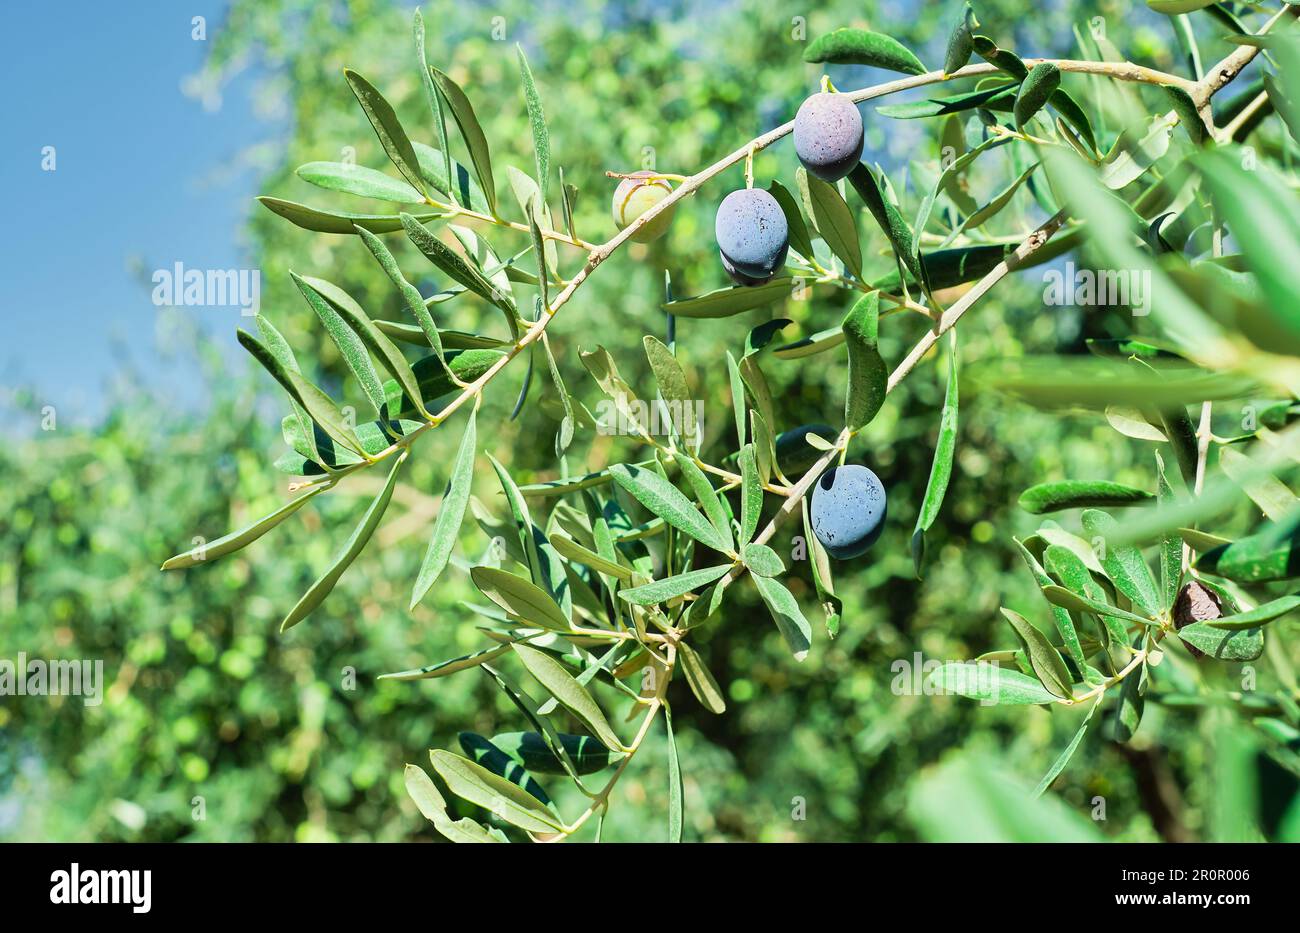 Olivenbaum mit reifen Früchten, Nahaufnahme, selektiver Fokus auf Oliven. Landwirtschaftliche Produkte, Olivenhaine Stockfoto